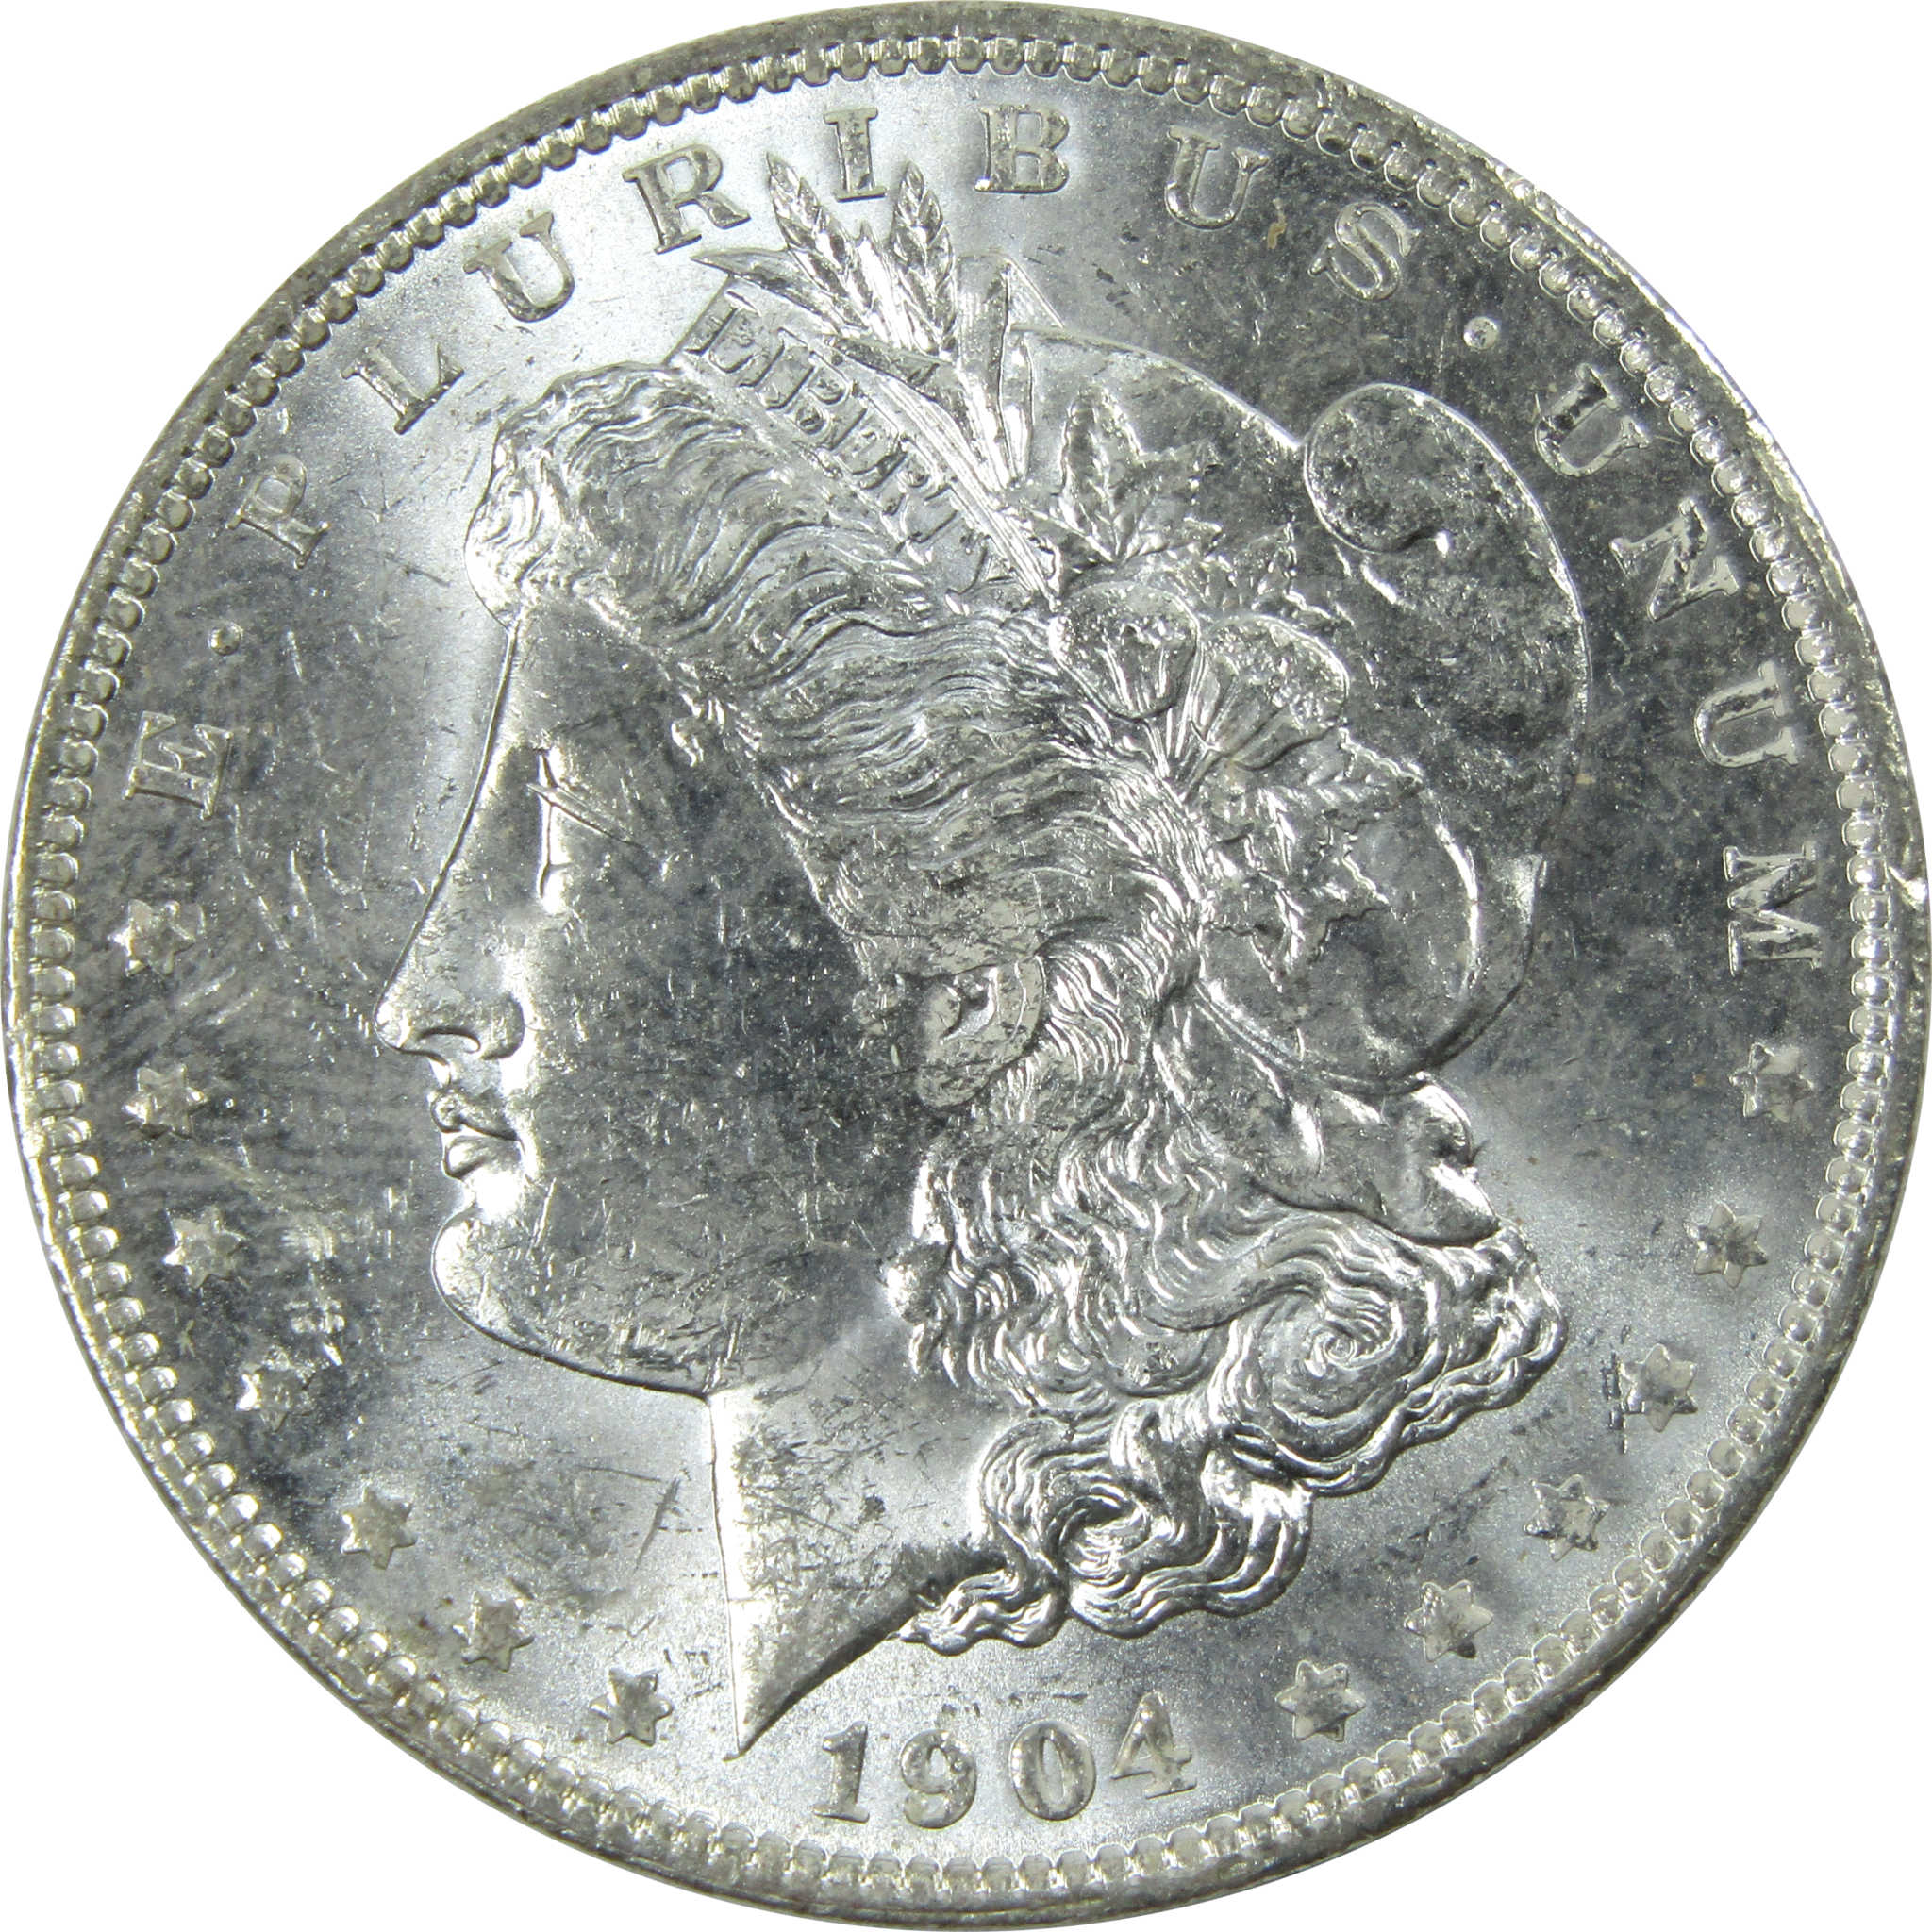 1904 O Morgan Dollar Uncirculated Silver $1 Coin SKU:I13740 - Morgan coin - Morgan silver dollar - Morgan silver dollar for sale - Profile Coins &amp; Collectibles